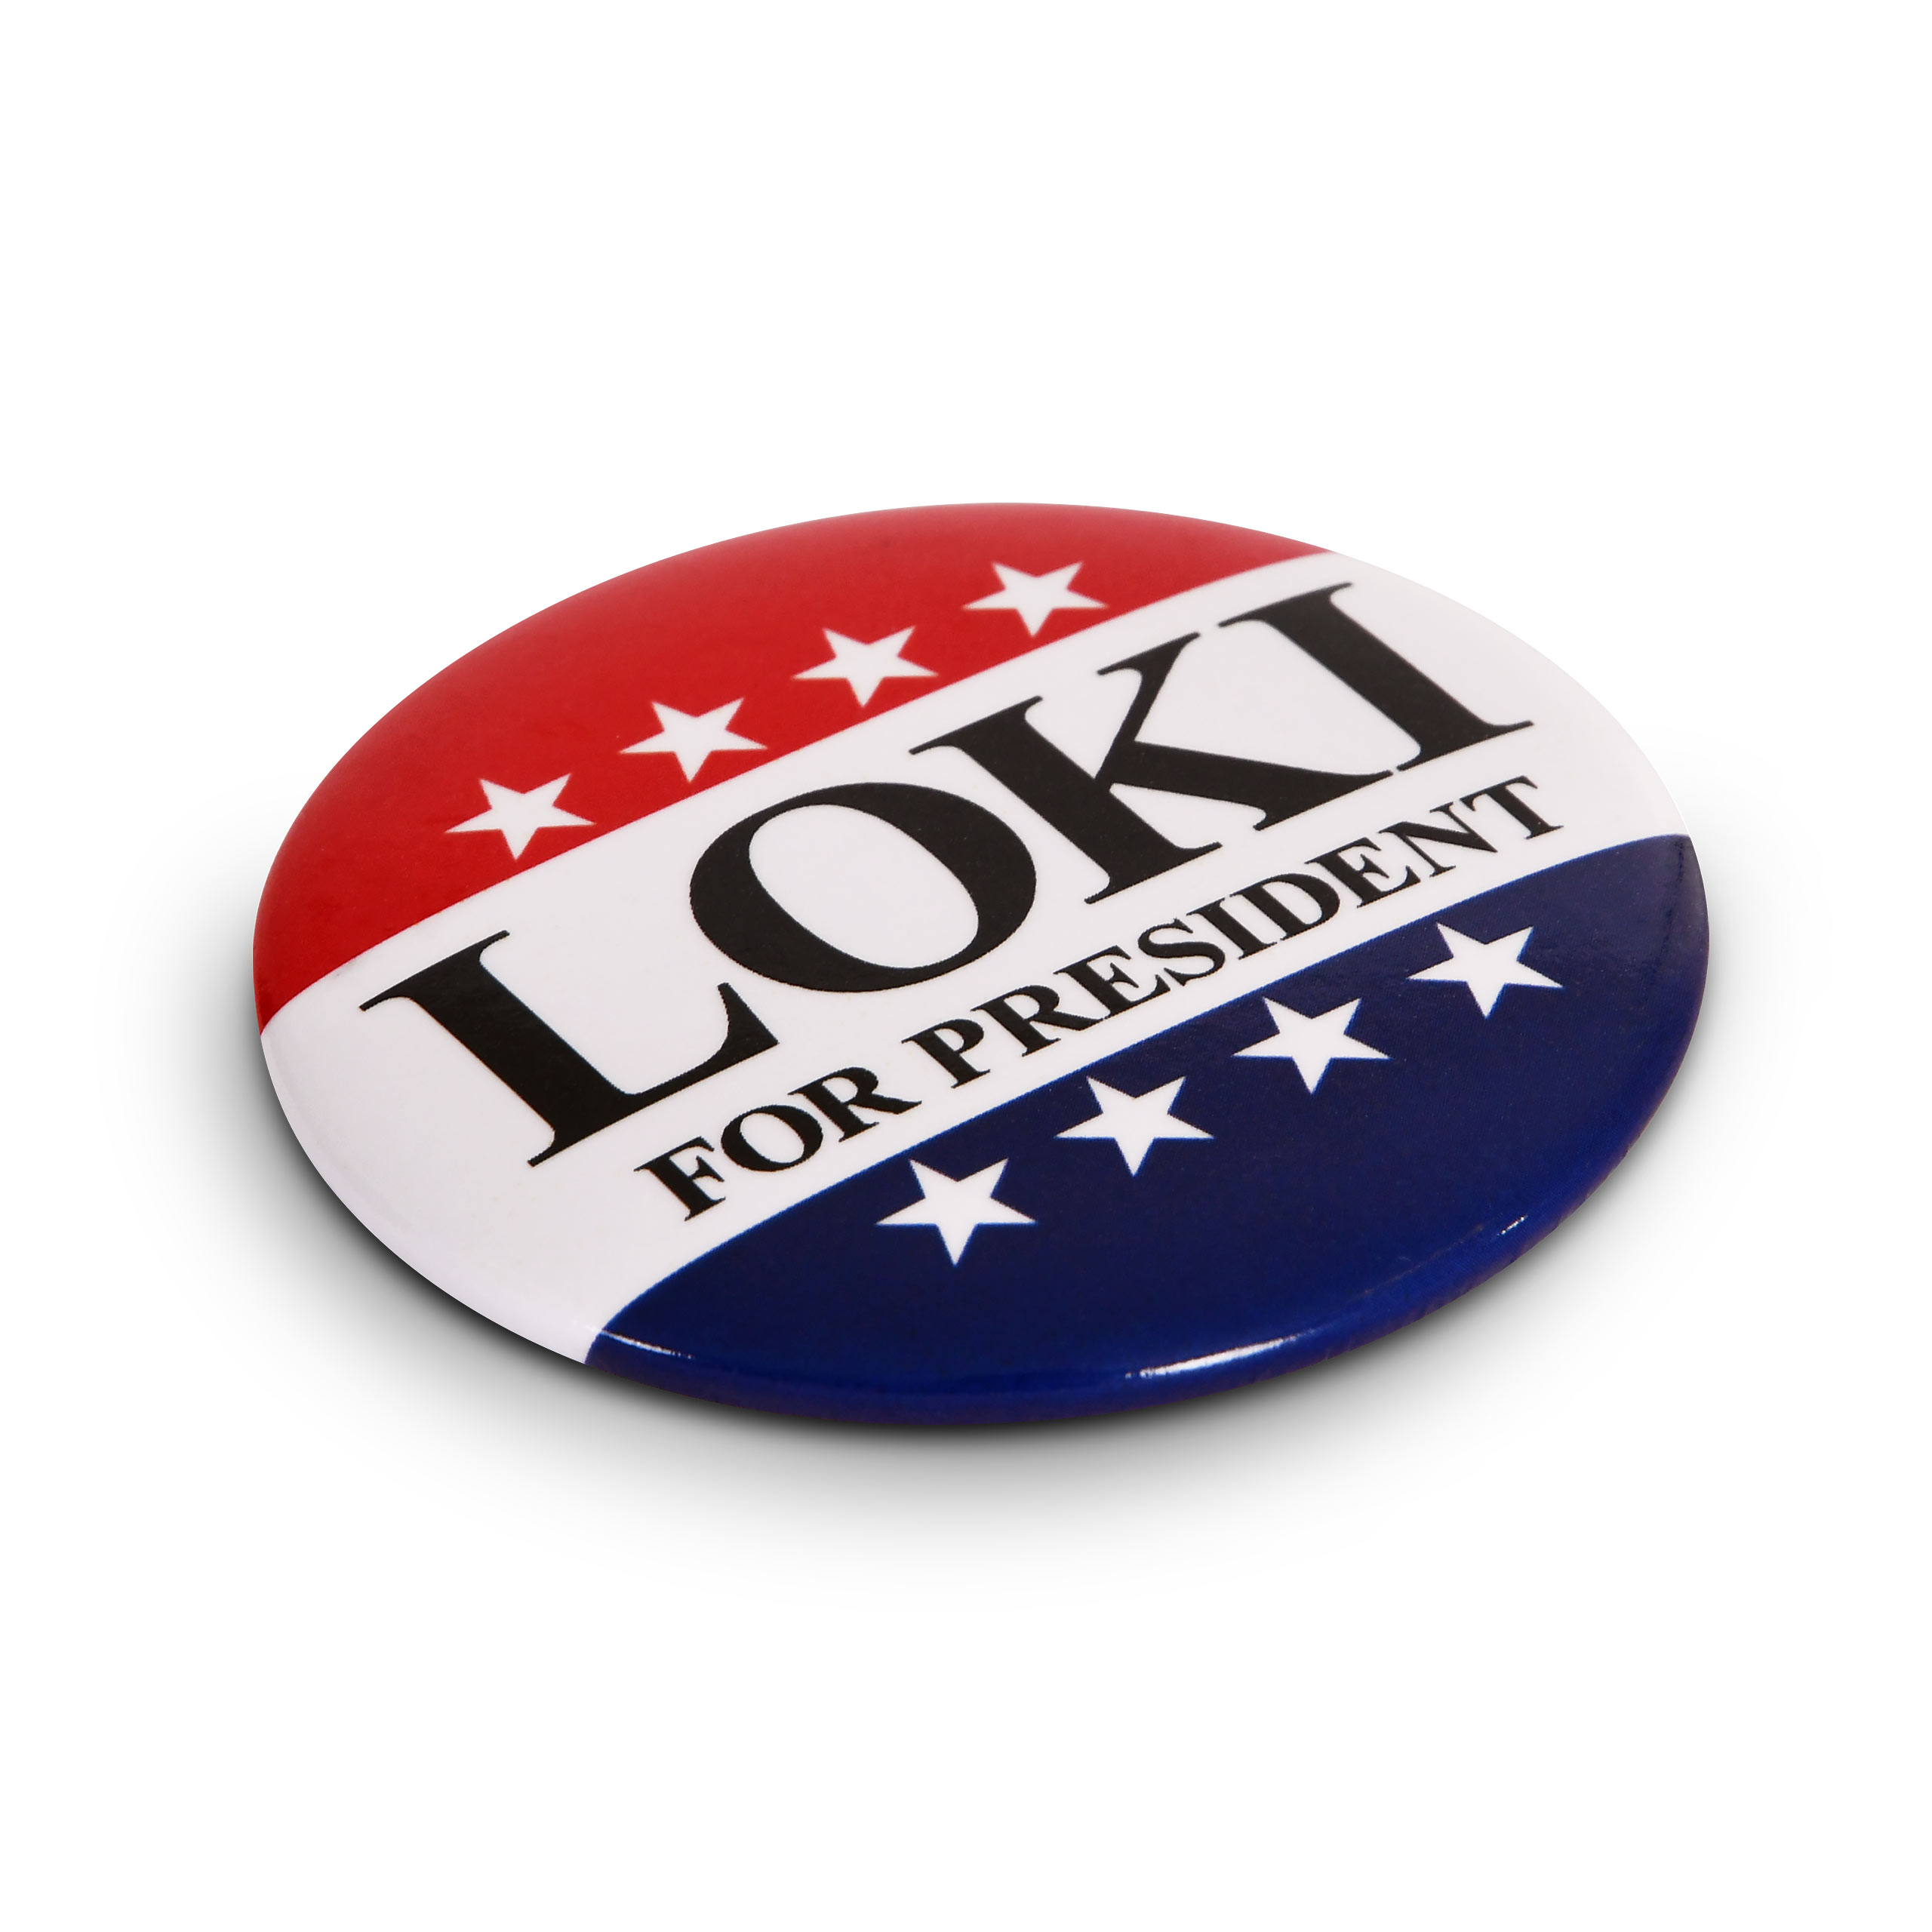 Bouton Pour le Président pour les fans de Loki